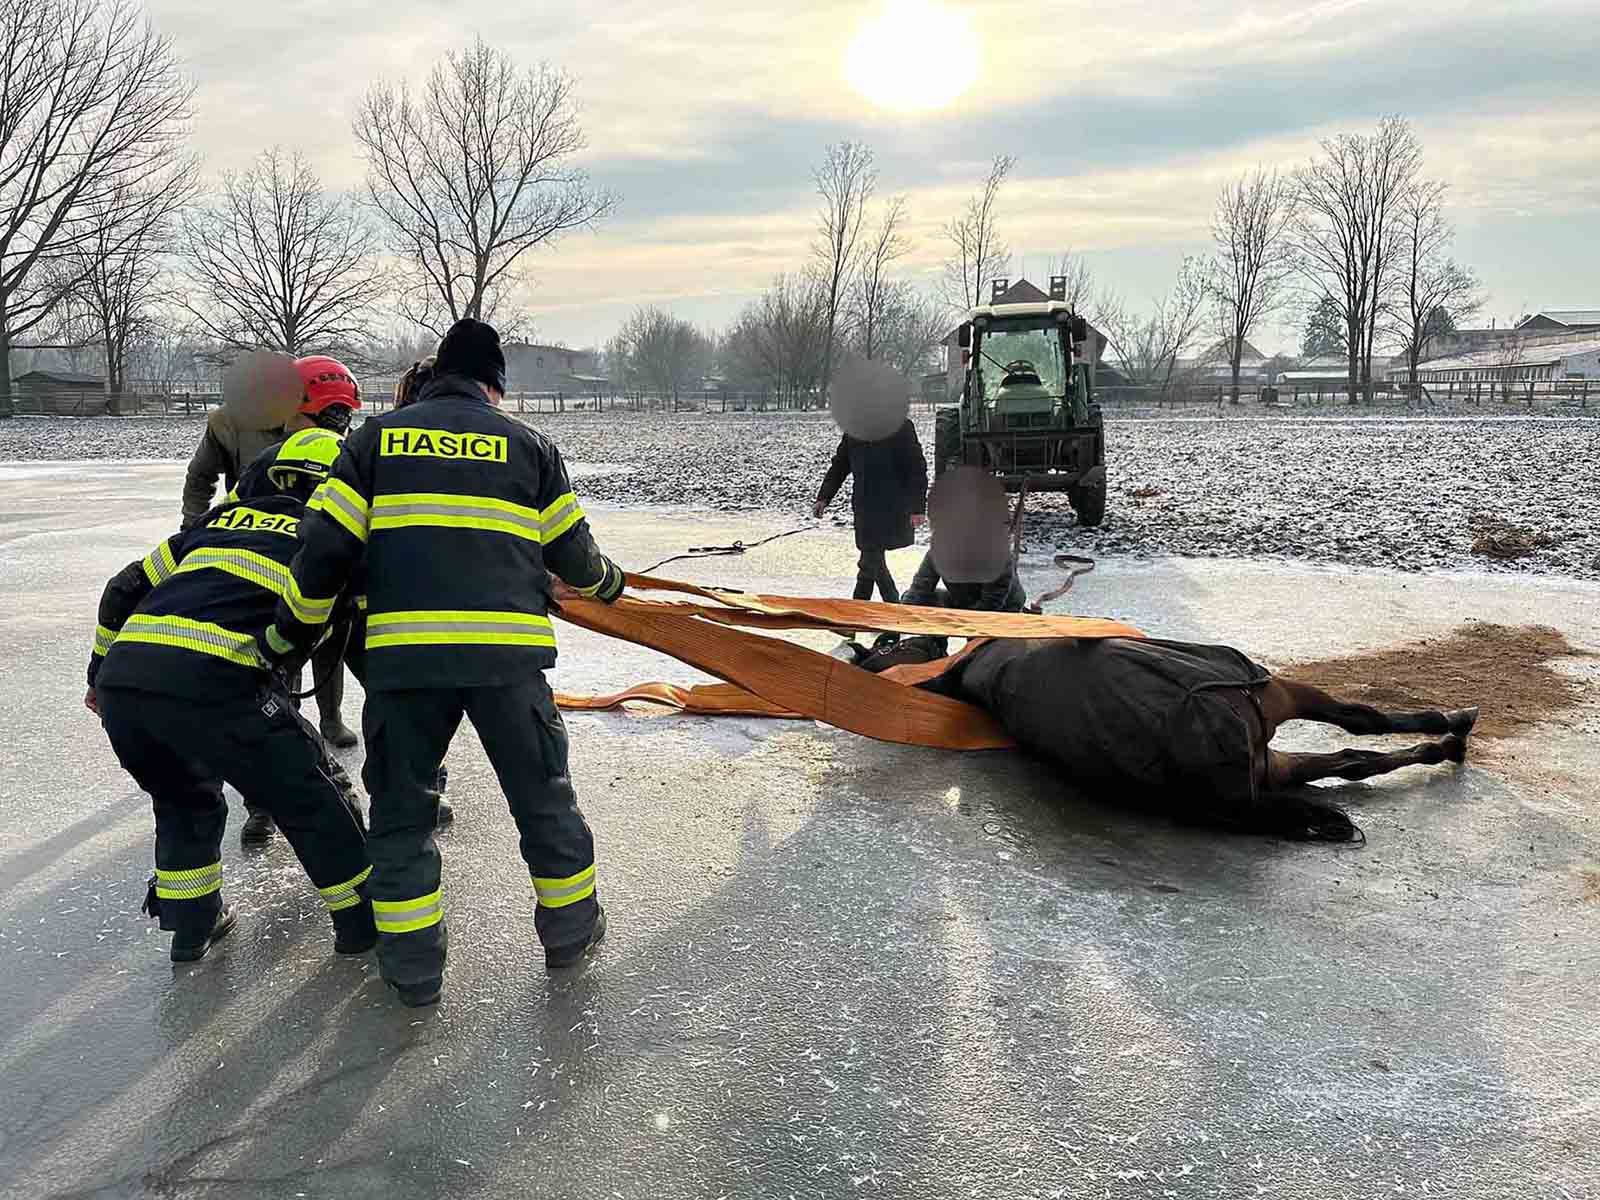 Hasiči na Pardubicku zachraňovali koně z ledové plochy. Přečtěte si další aktuality na portále horseboook